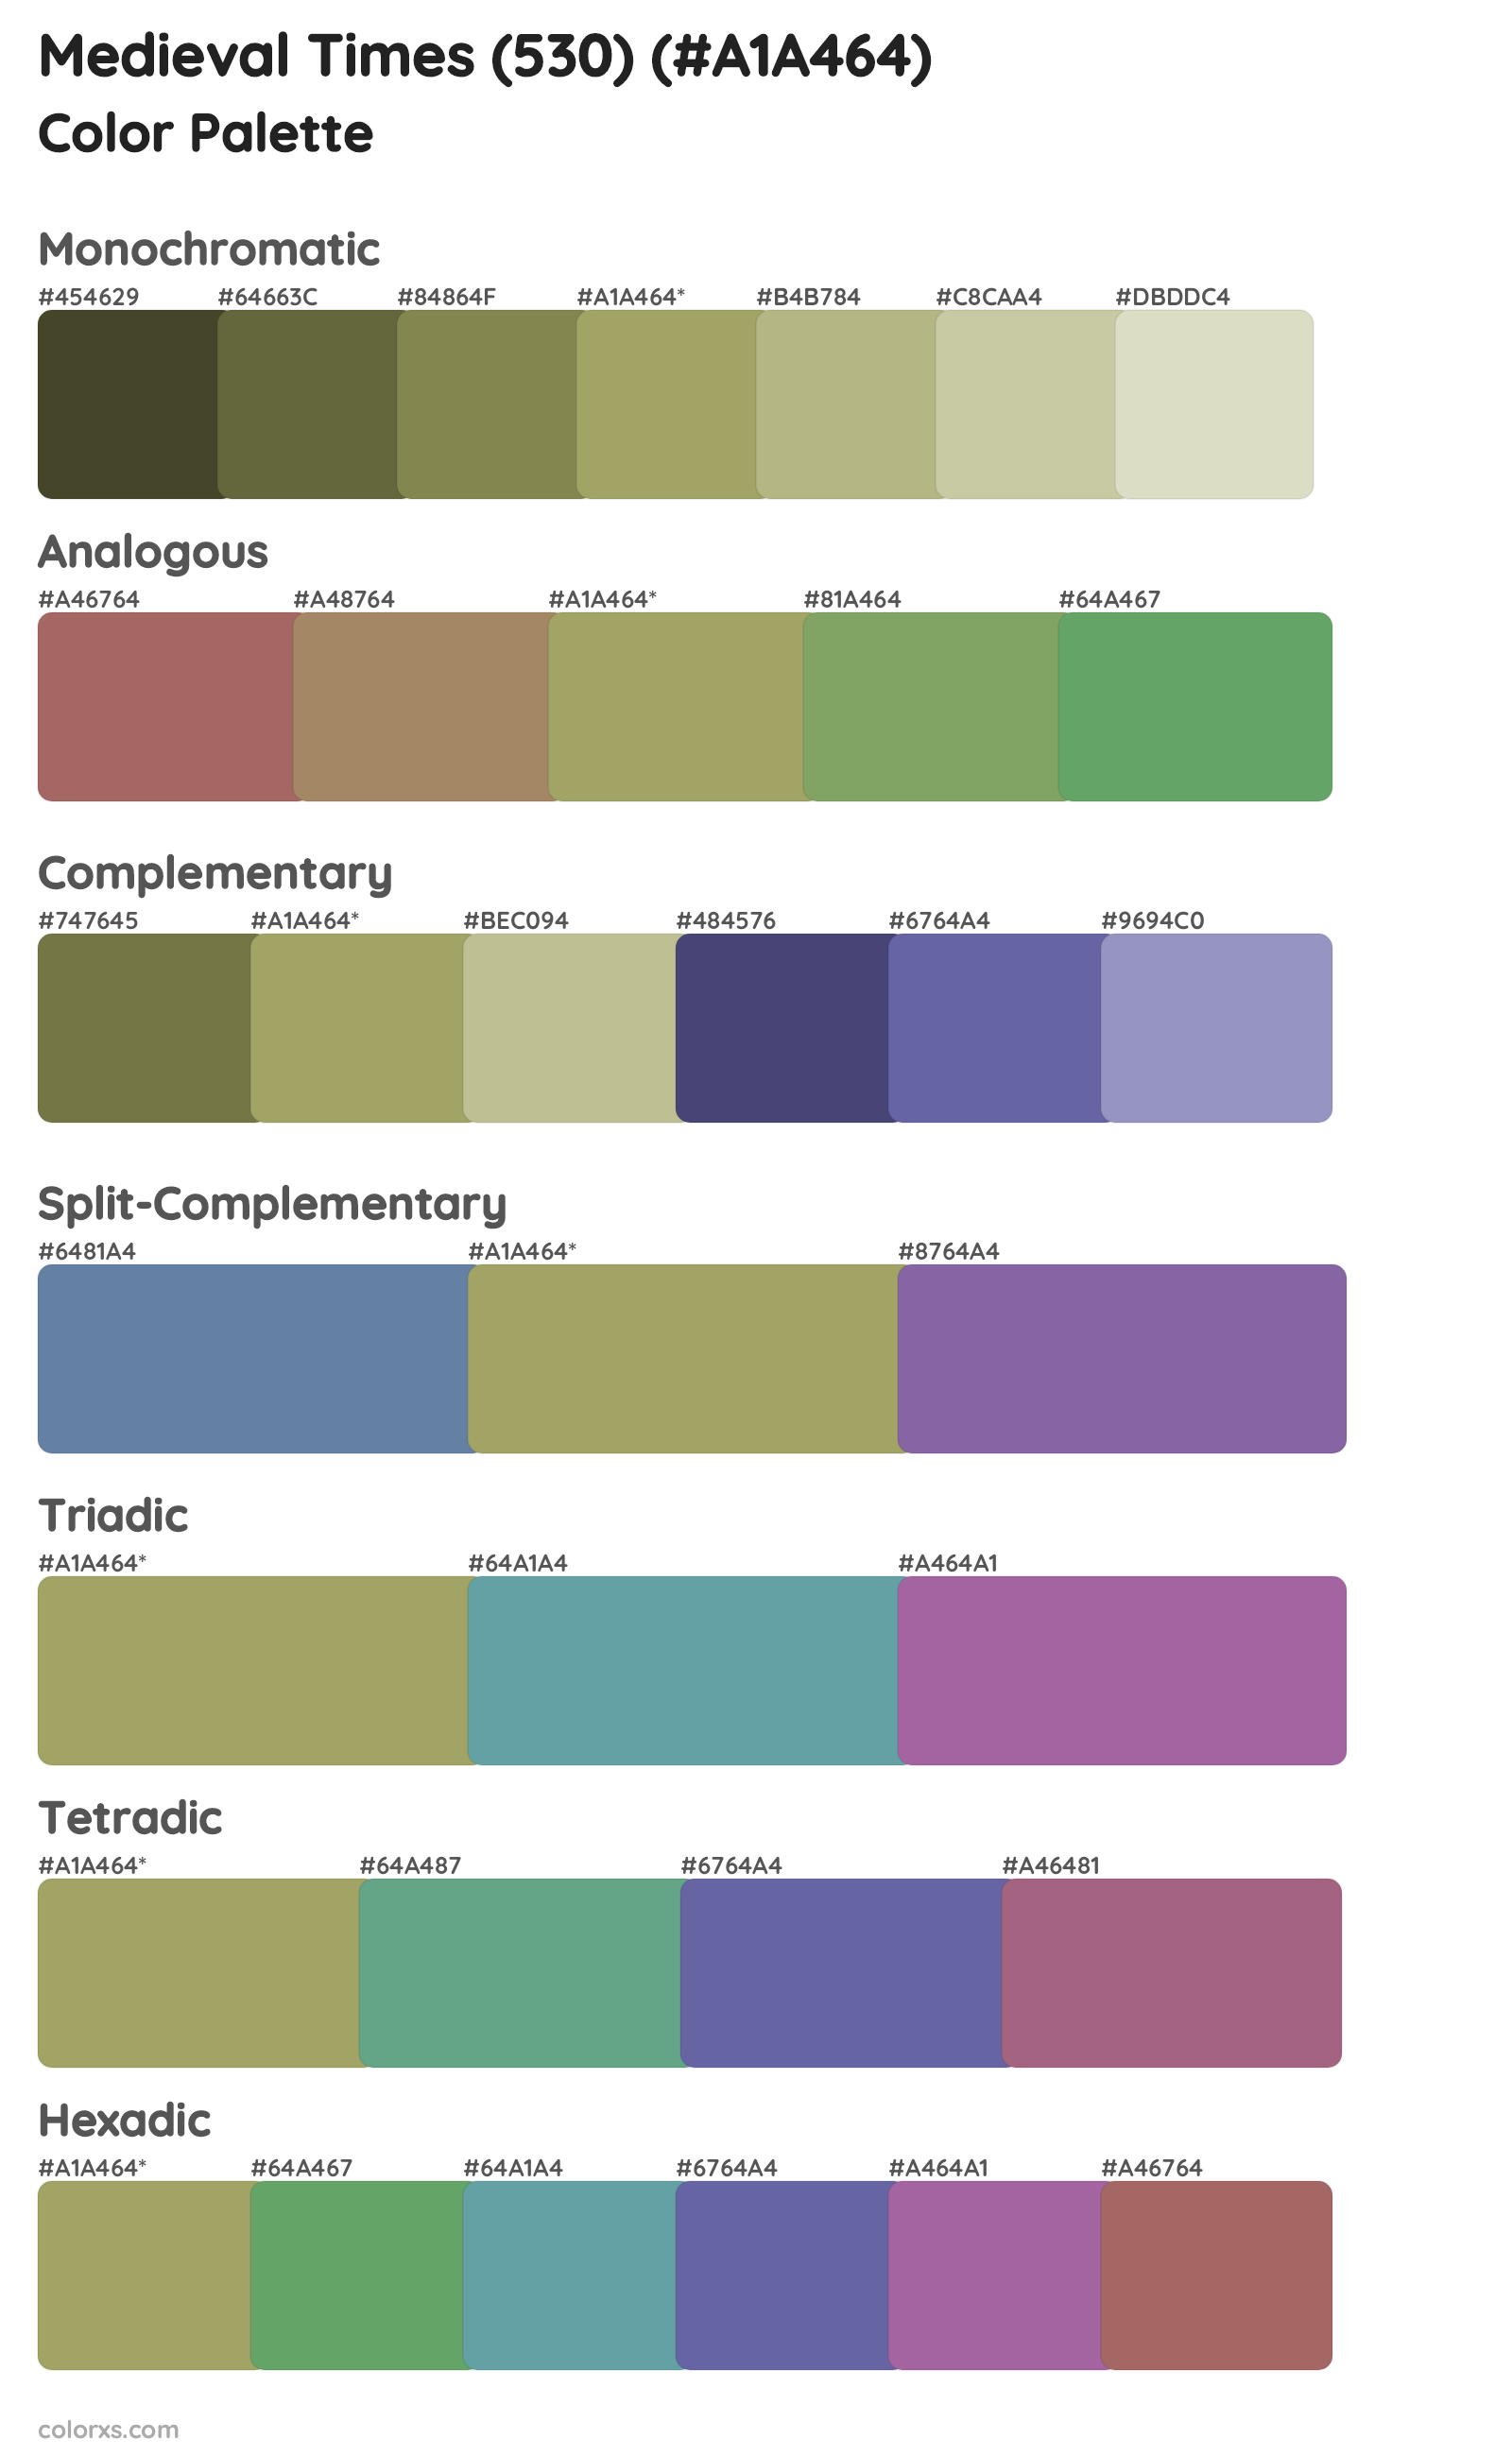 Medieval Times (530) Color Scheme Palettes